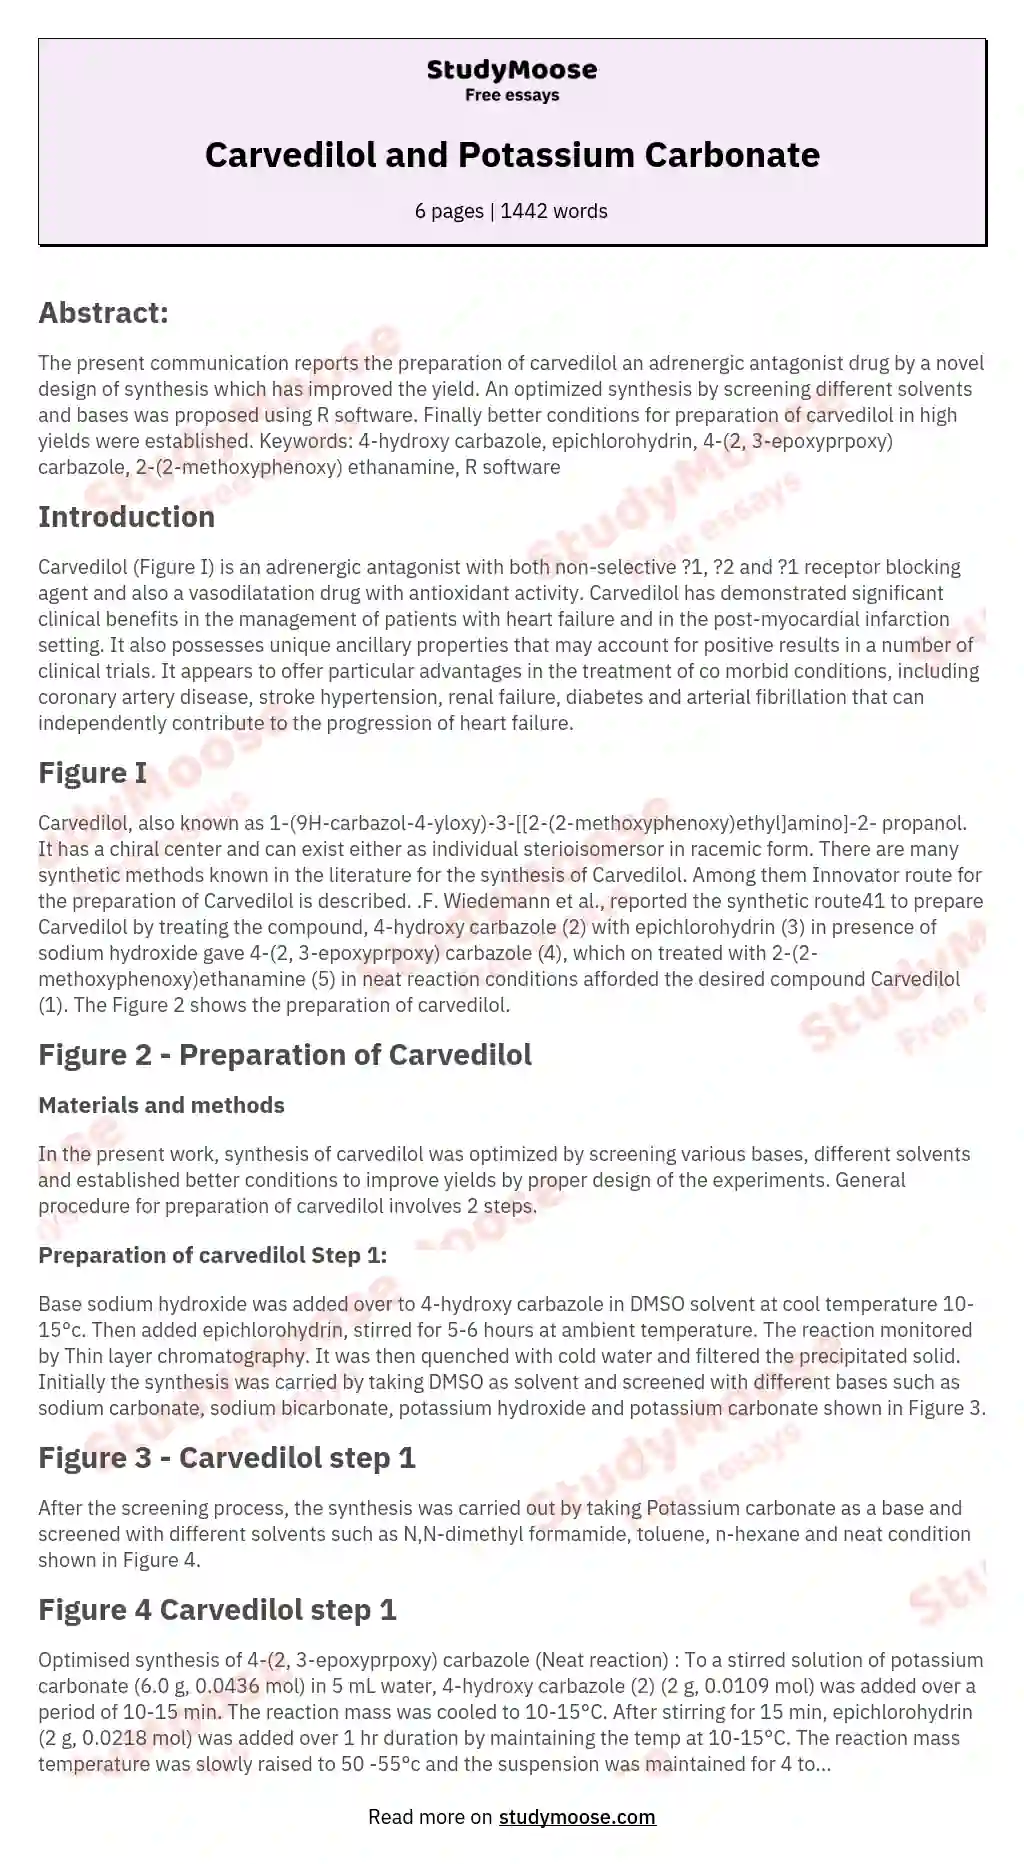 Carvedilol and Potassium Carbonate essay